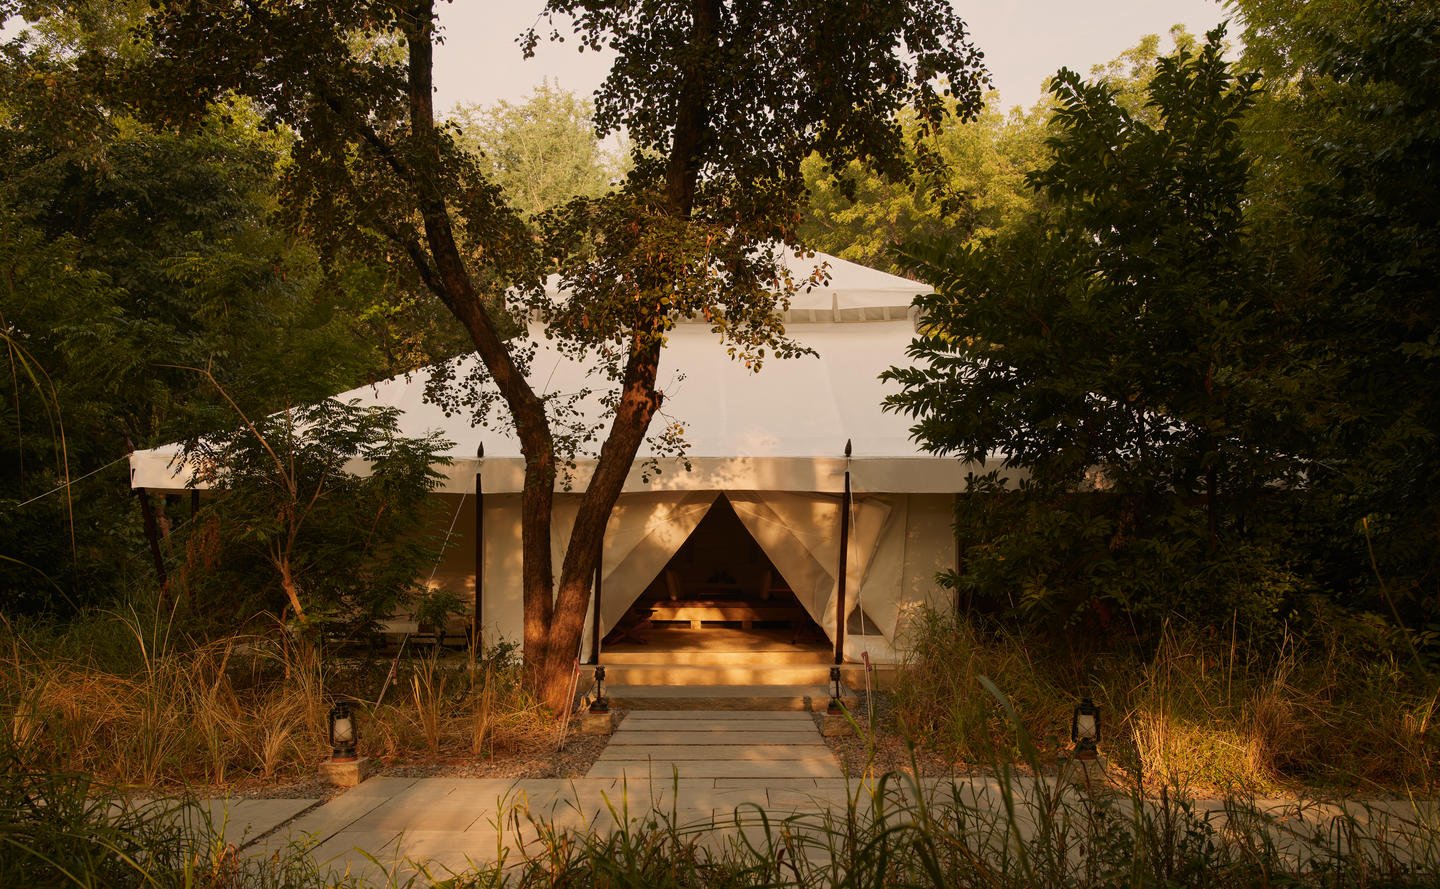 Aman-i-Khas, India - Accommodation -Tent-Exterior.jpg